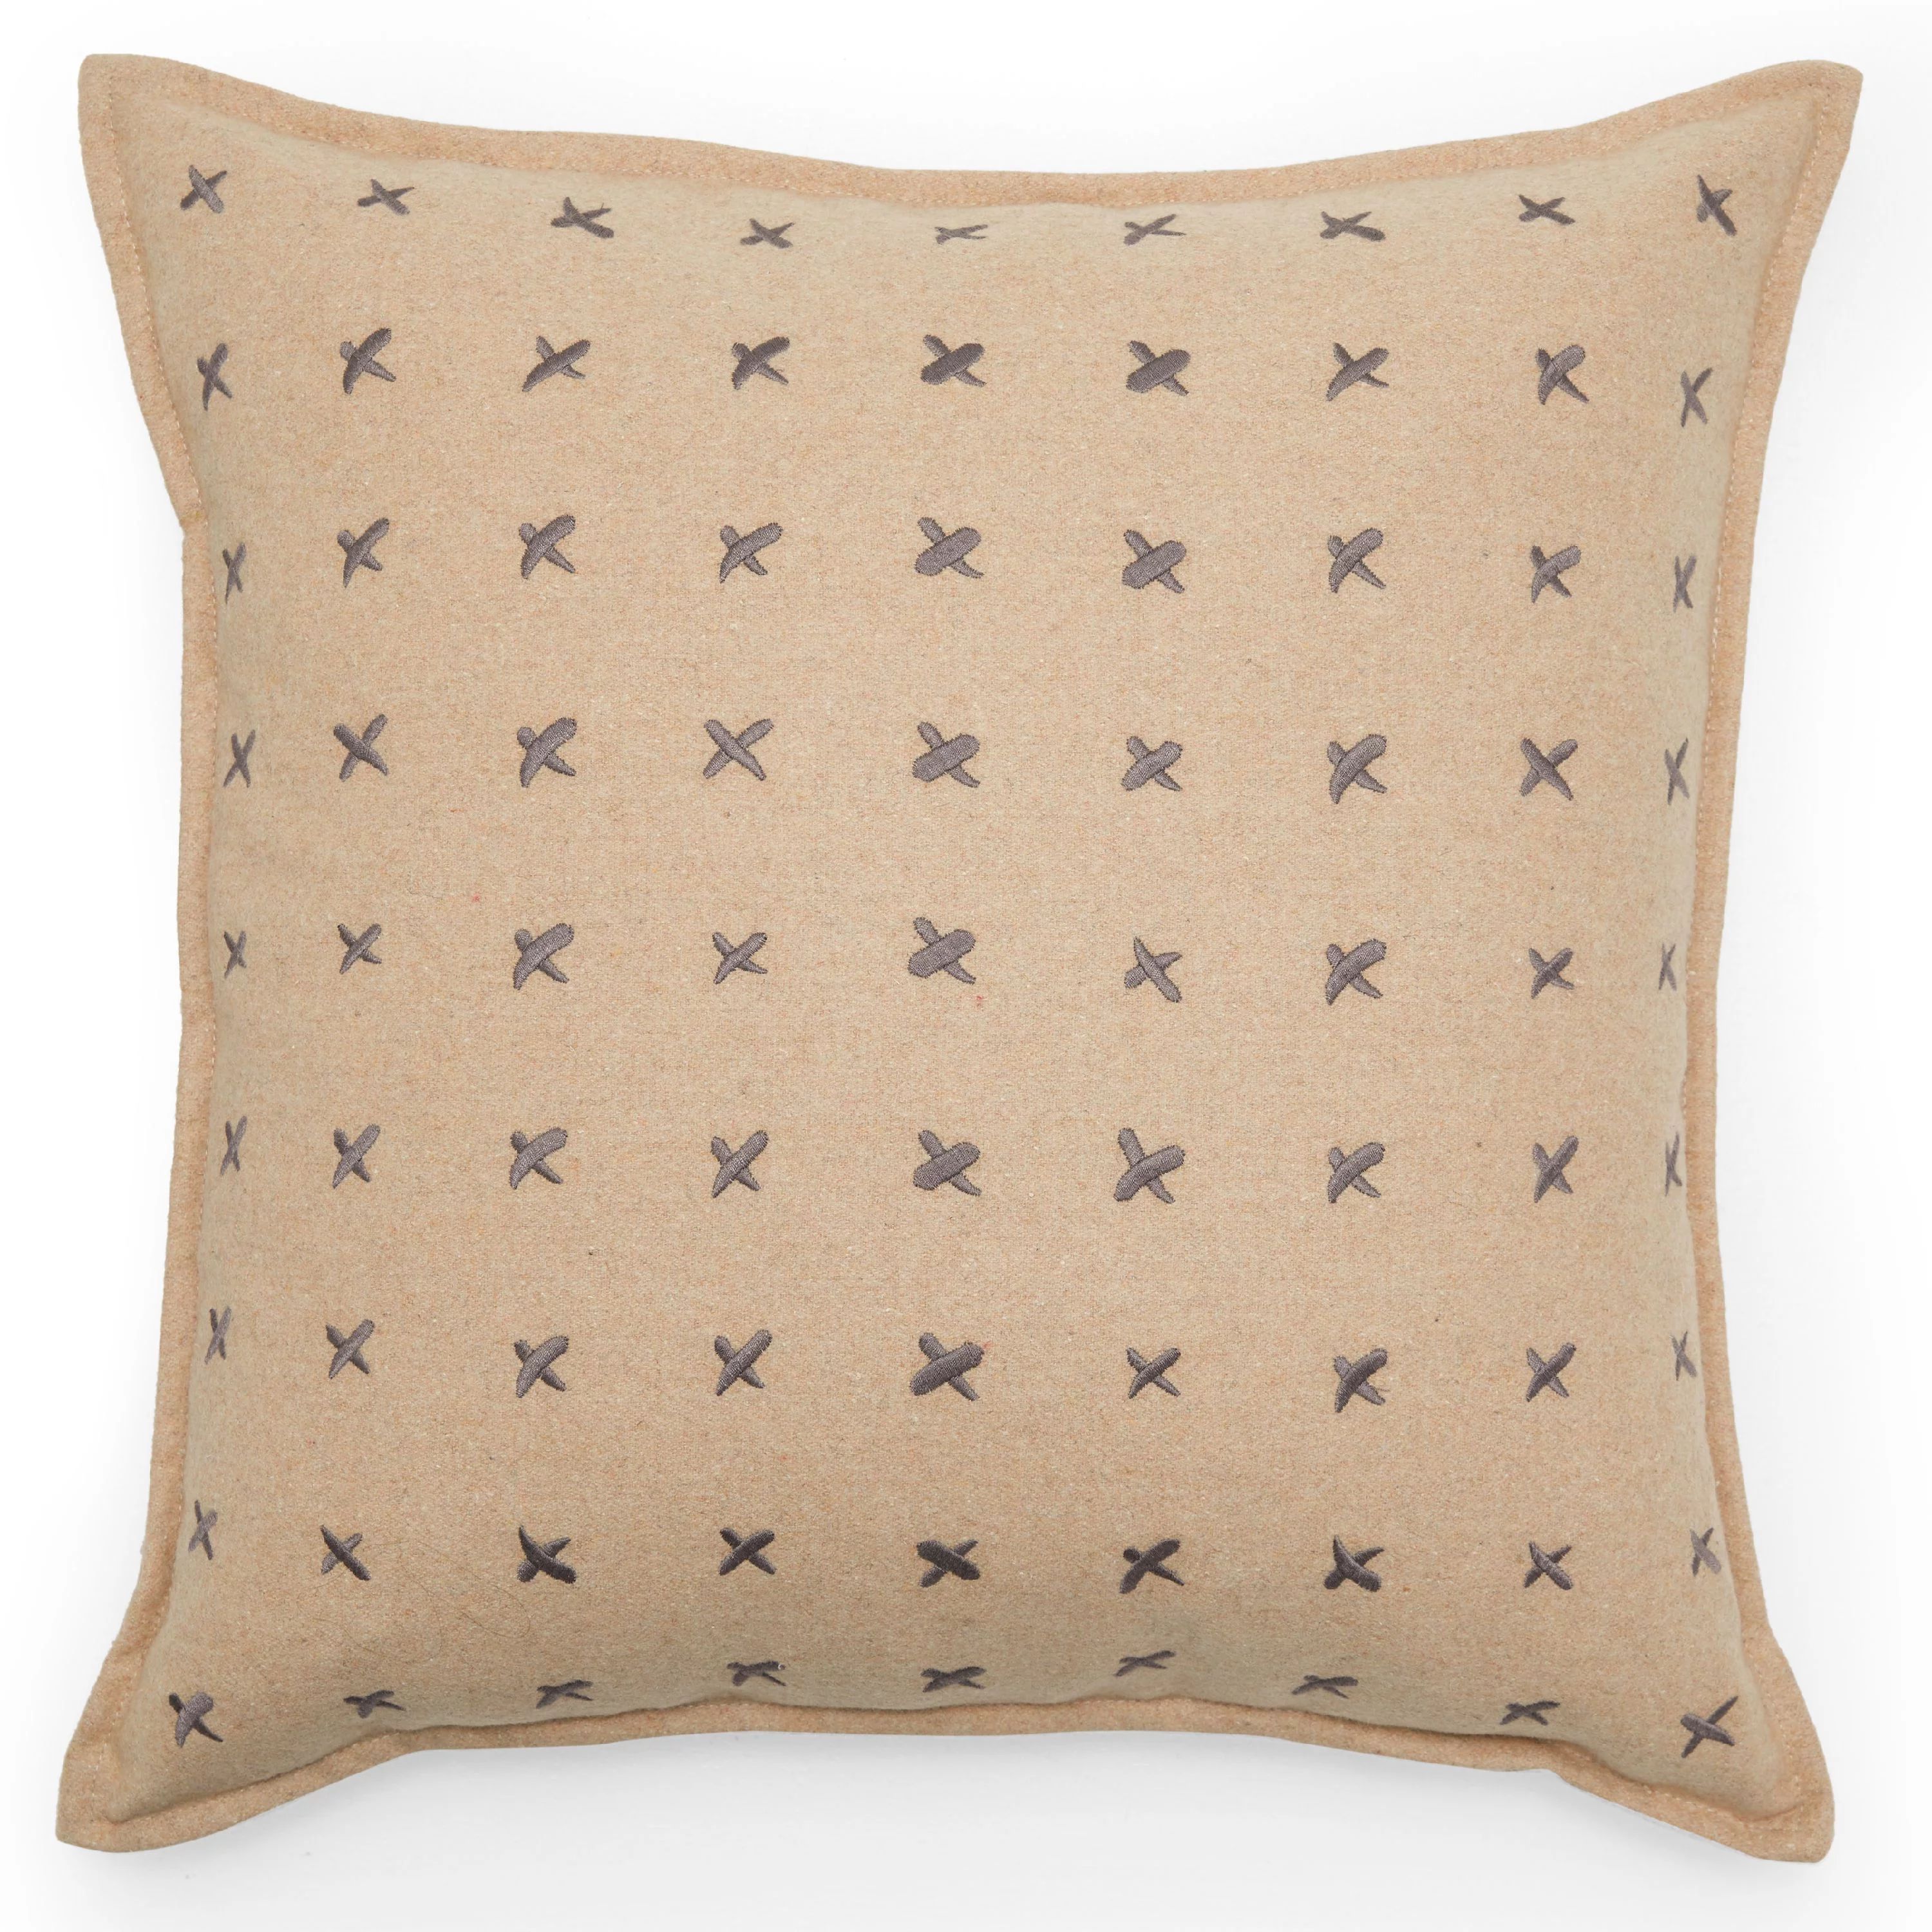 MoDRN Industrial Pick Stitch Decorative Throw Pillow, 20" x 20" | Walmart (US)